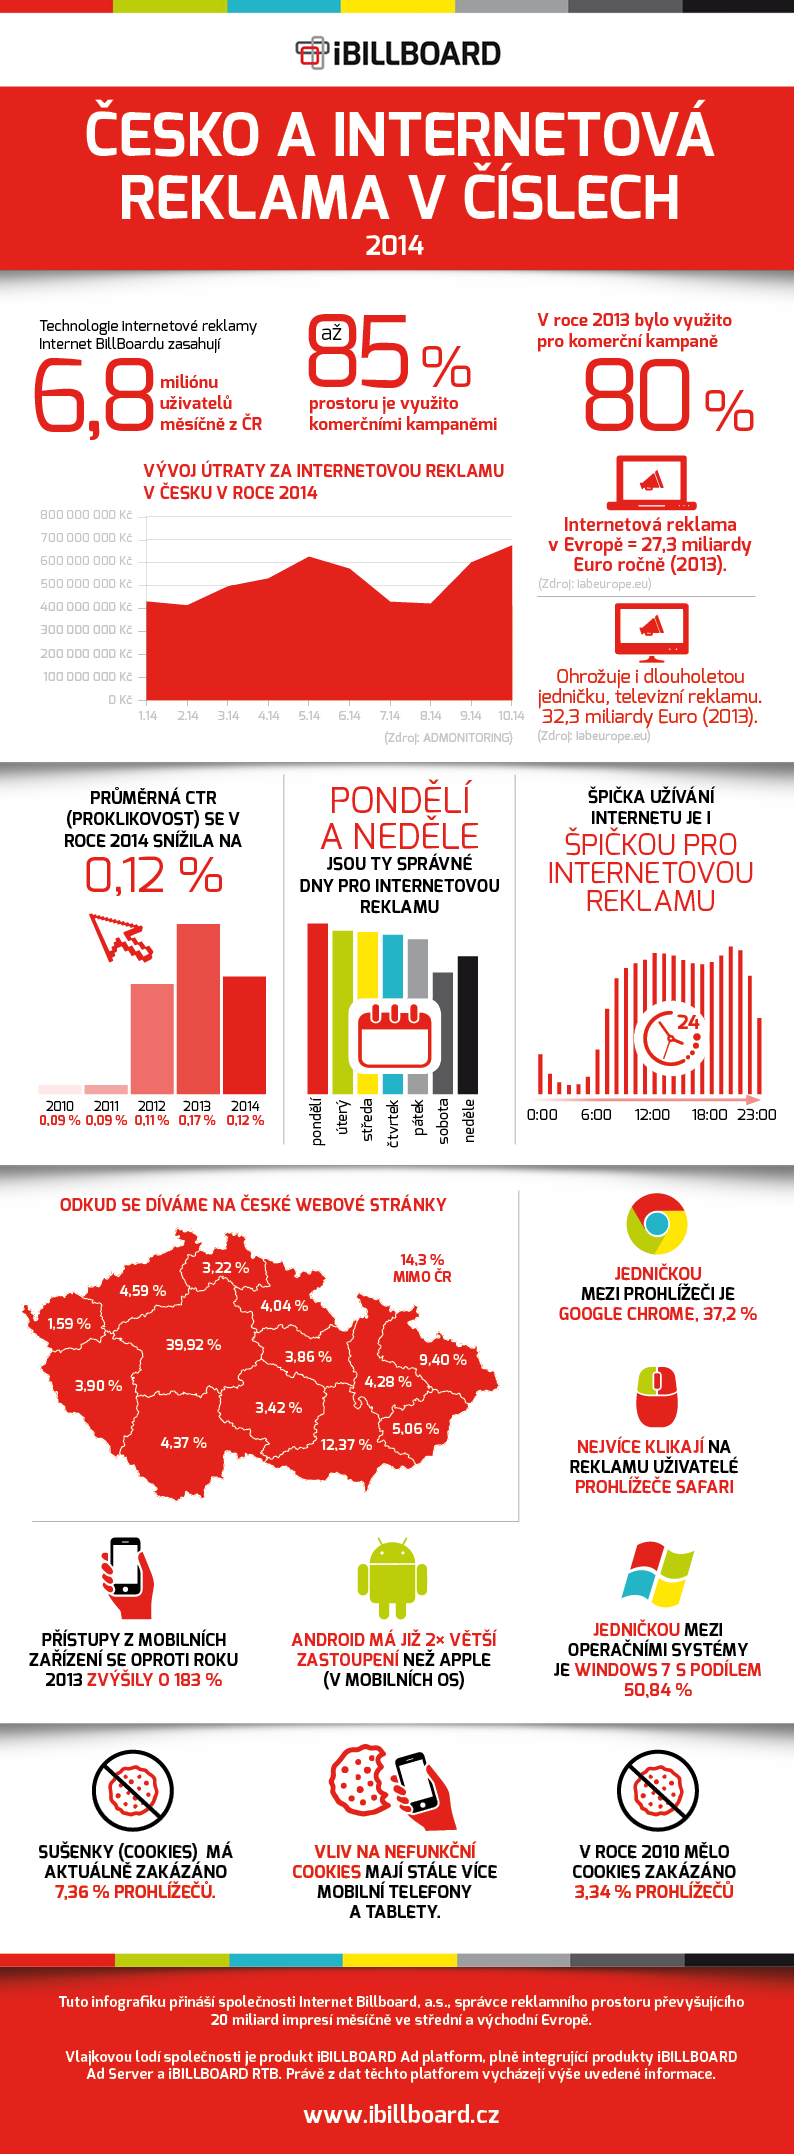 Internet Billboard přináší data o reklamním trhu v ČR za rok 2014 v přehledné infografice